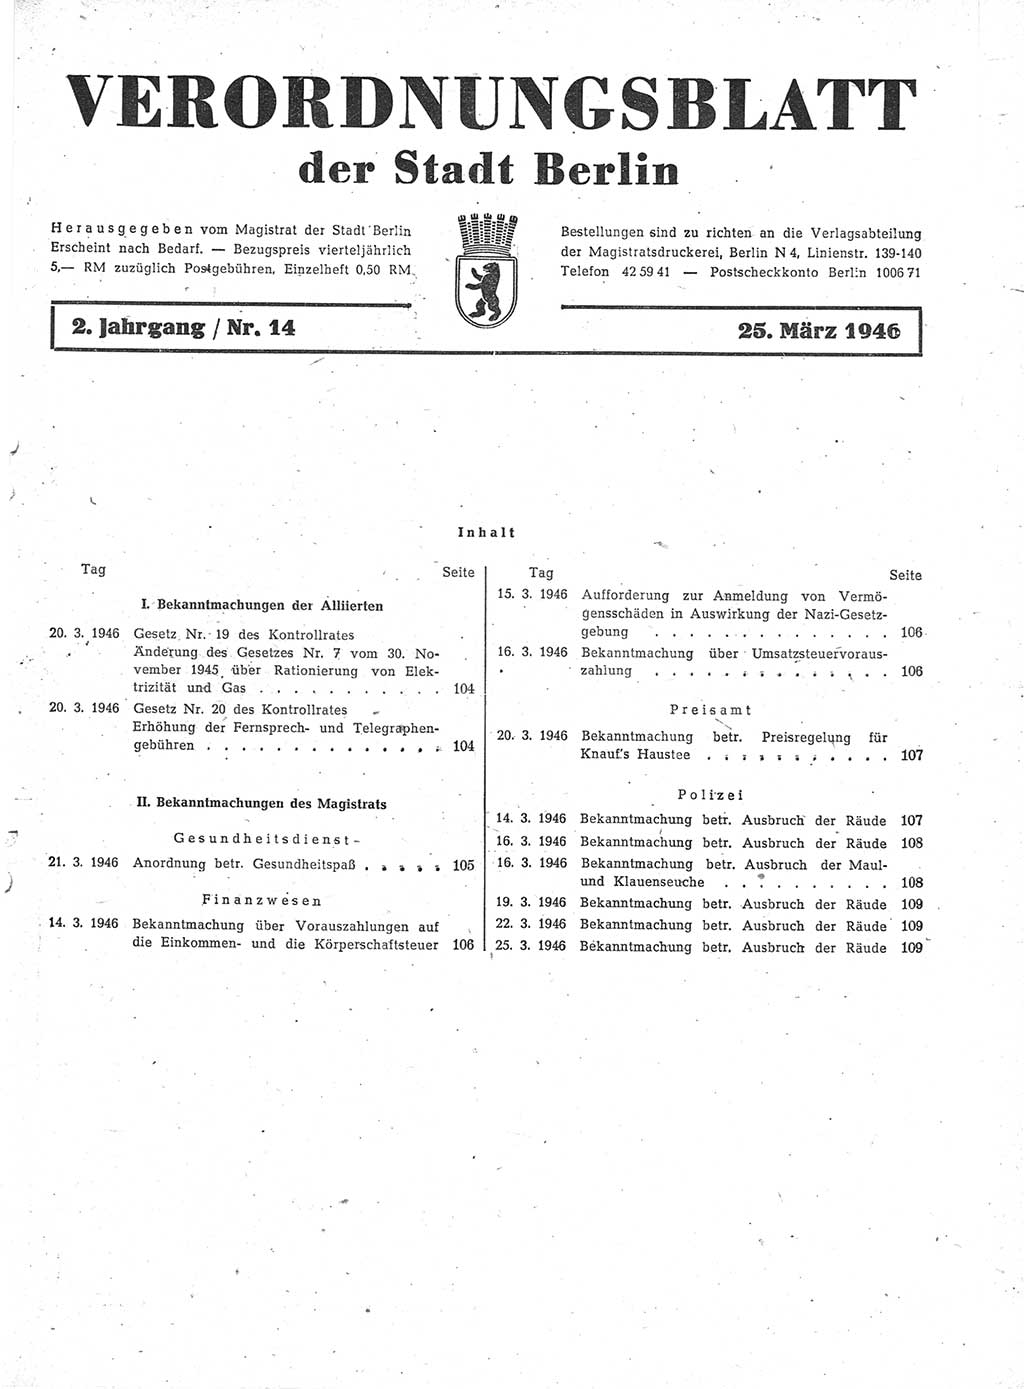 Verordnungsblatt (VOBl.) der Stadt Berlin, für Groß-Berlin 1946, Seite 103 (VOBl. Bln. 1946, S. 103)